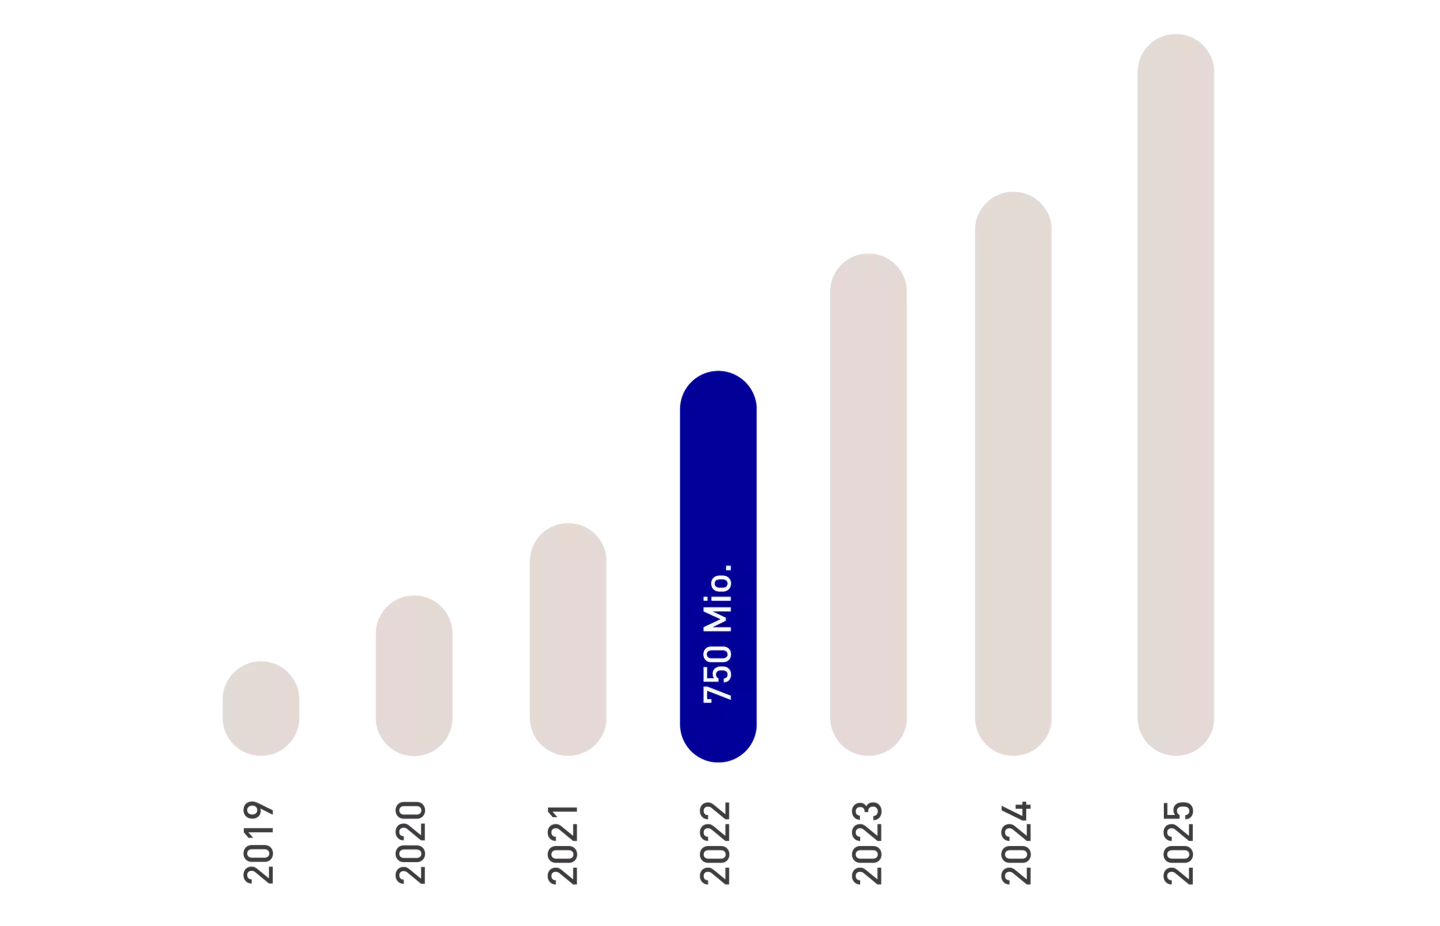 SENEC Umsatz Jahresübersicht (750 Mio in 2022)